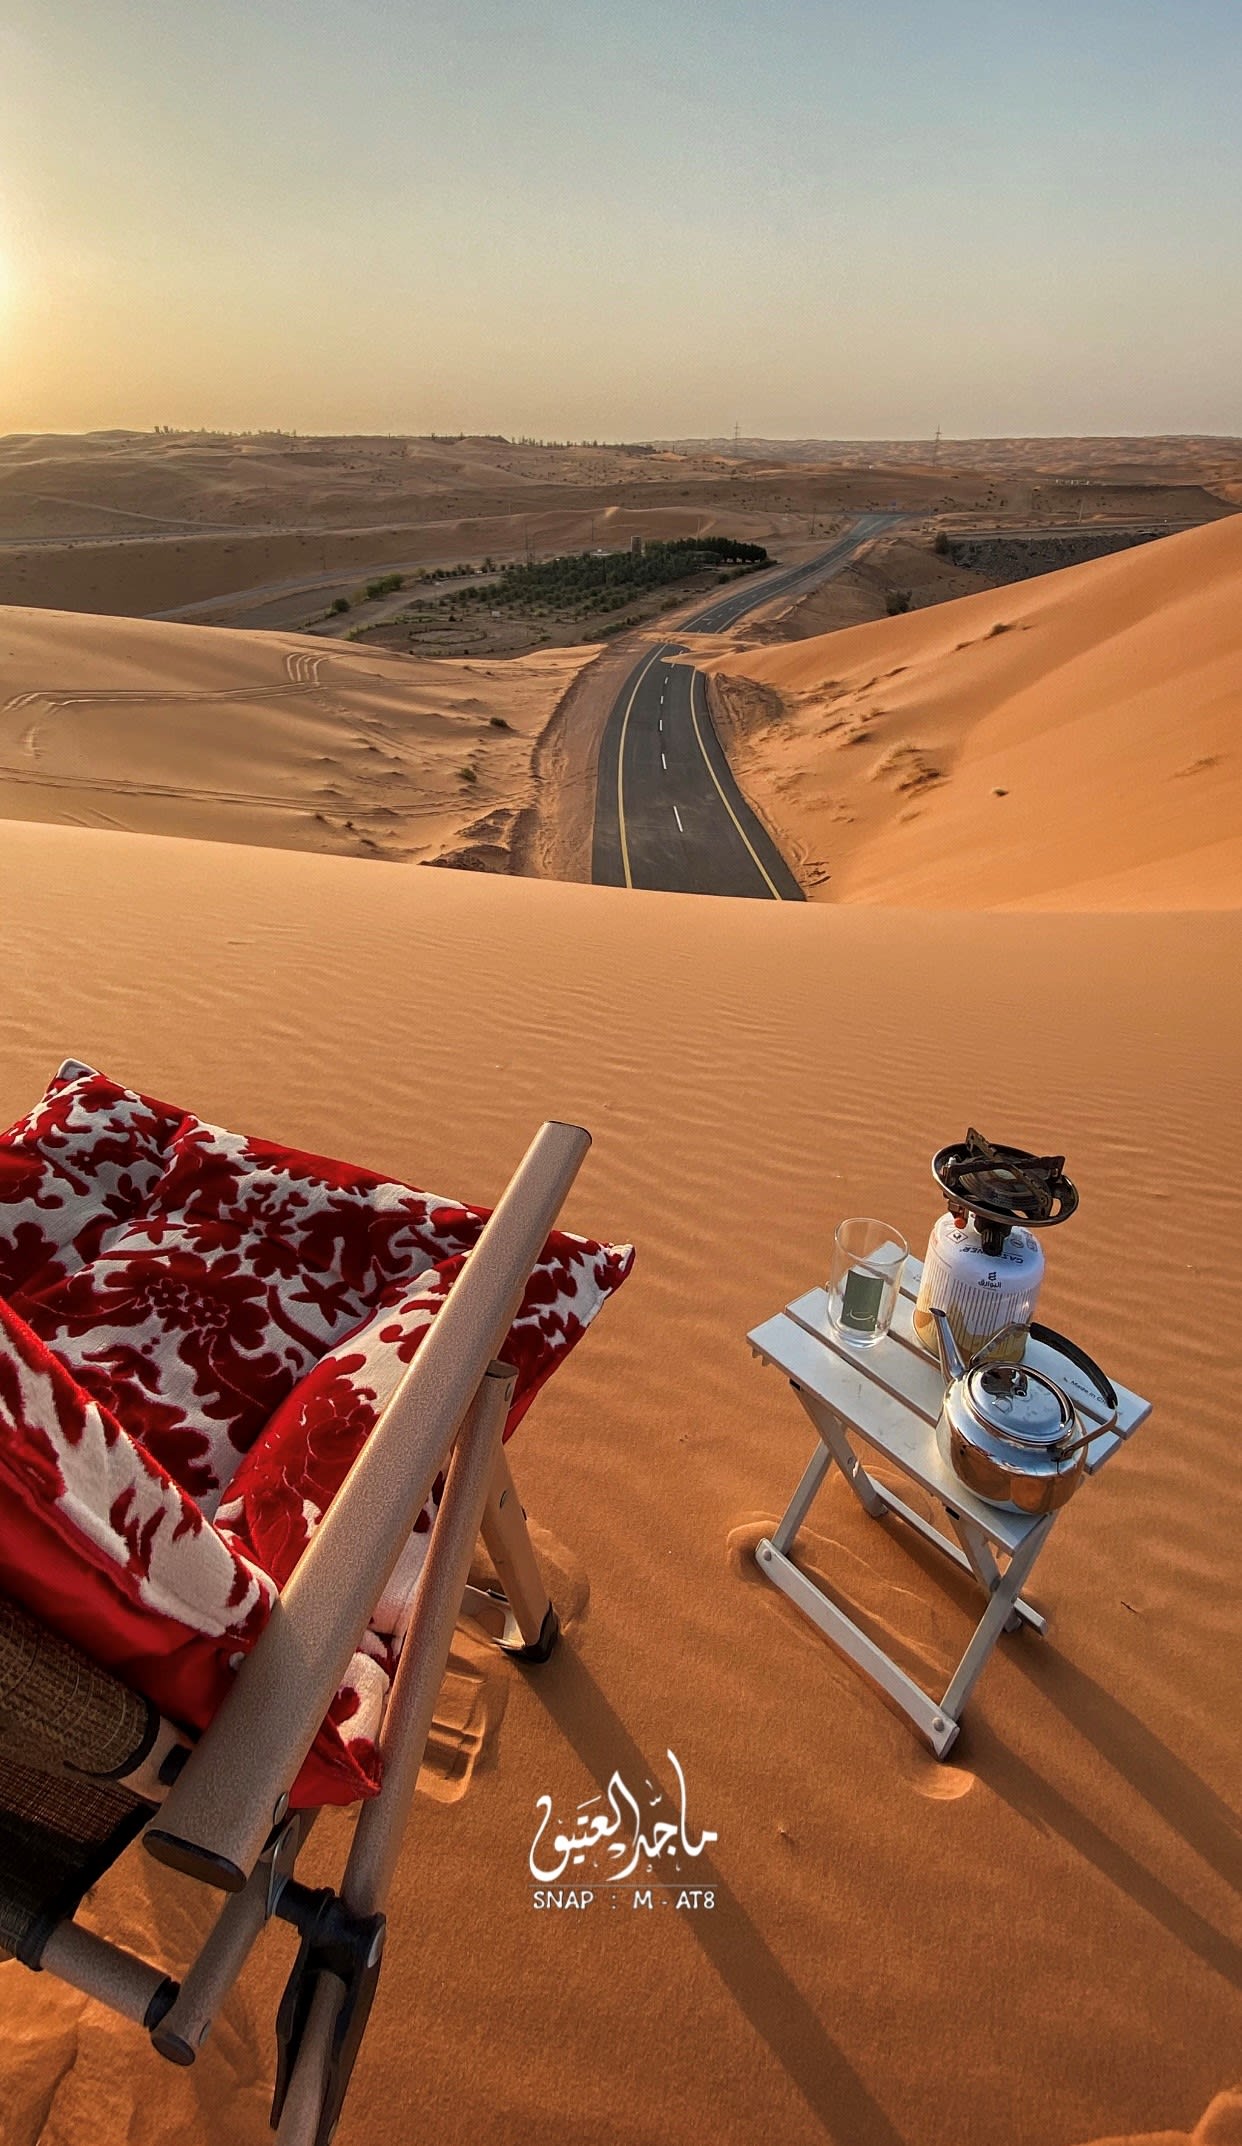 En Arabie Saoudite, un photographe documente une charmante promenade au bout d'une route recouverte de sable